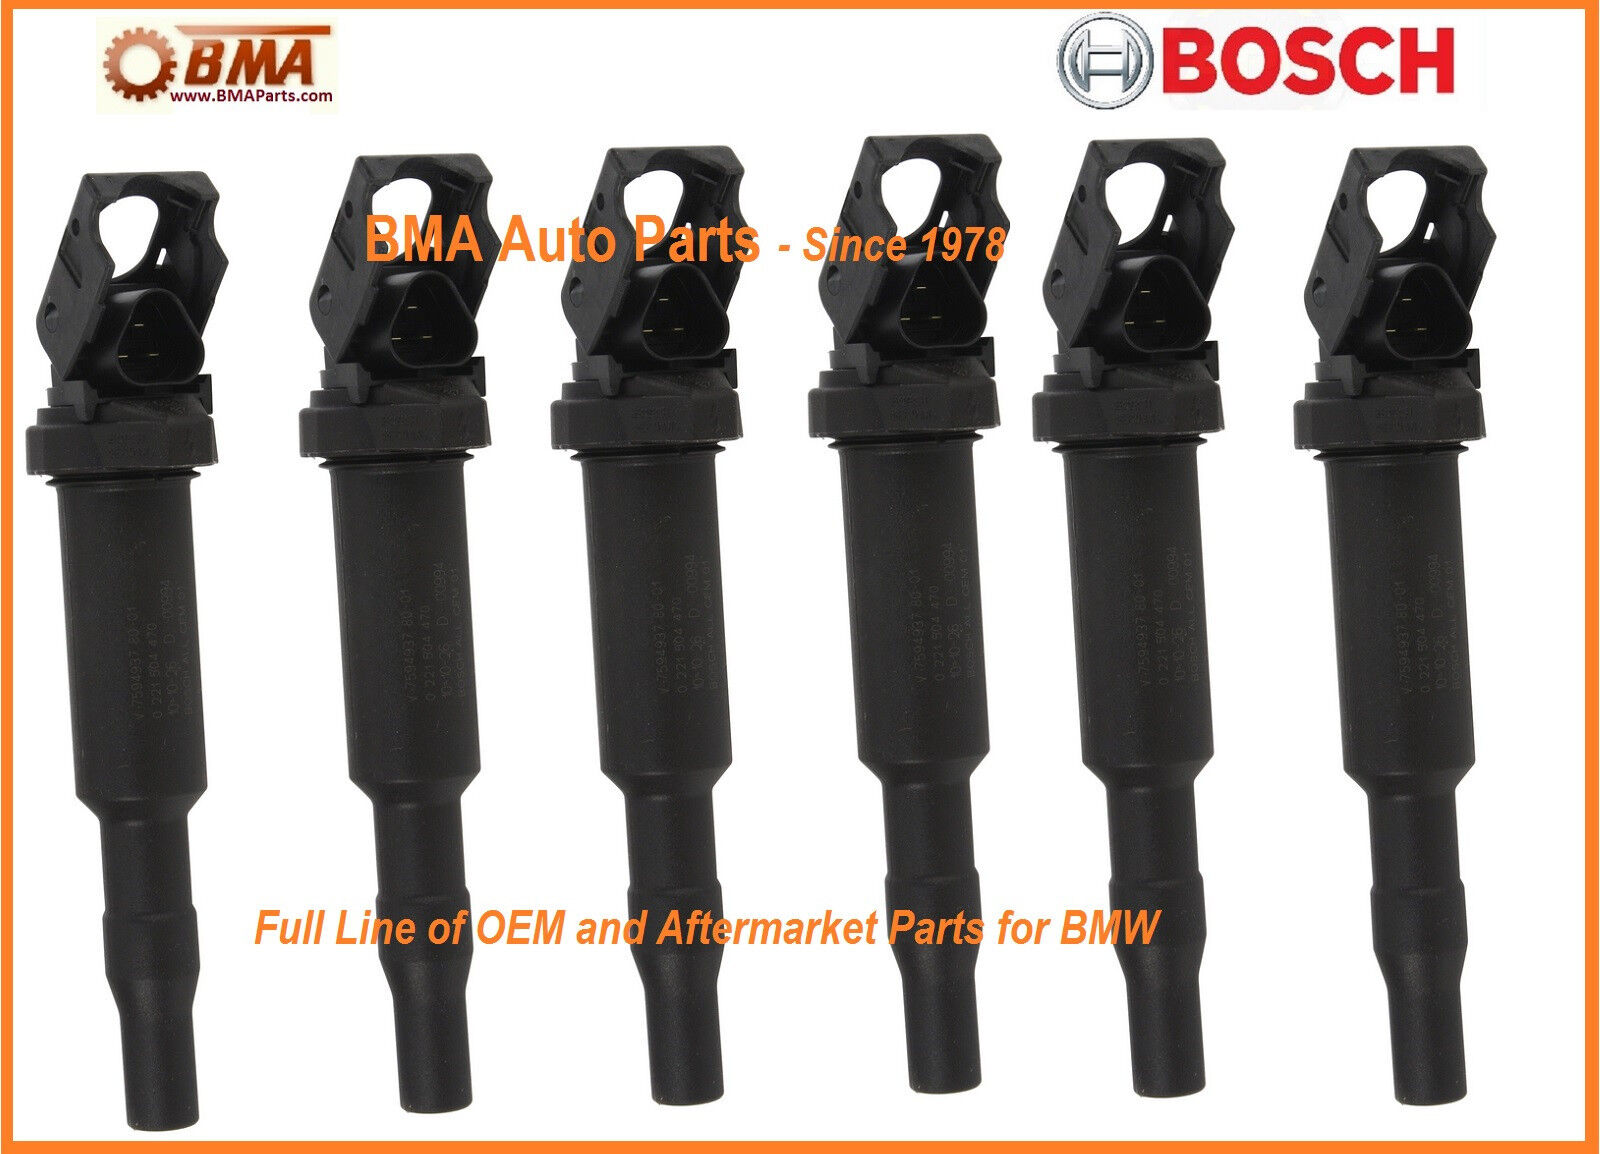 New OEM Bosch BMW E46 E60 E85 E90 Ignition Coil Set x6 - 12137594937 /0221504470